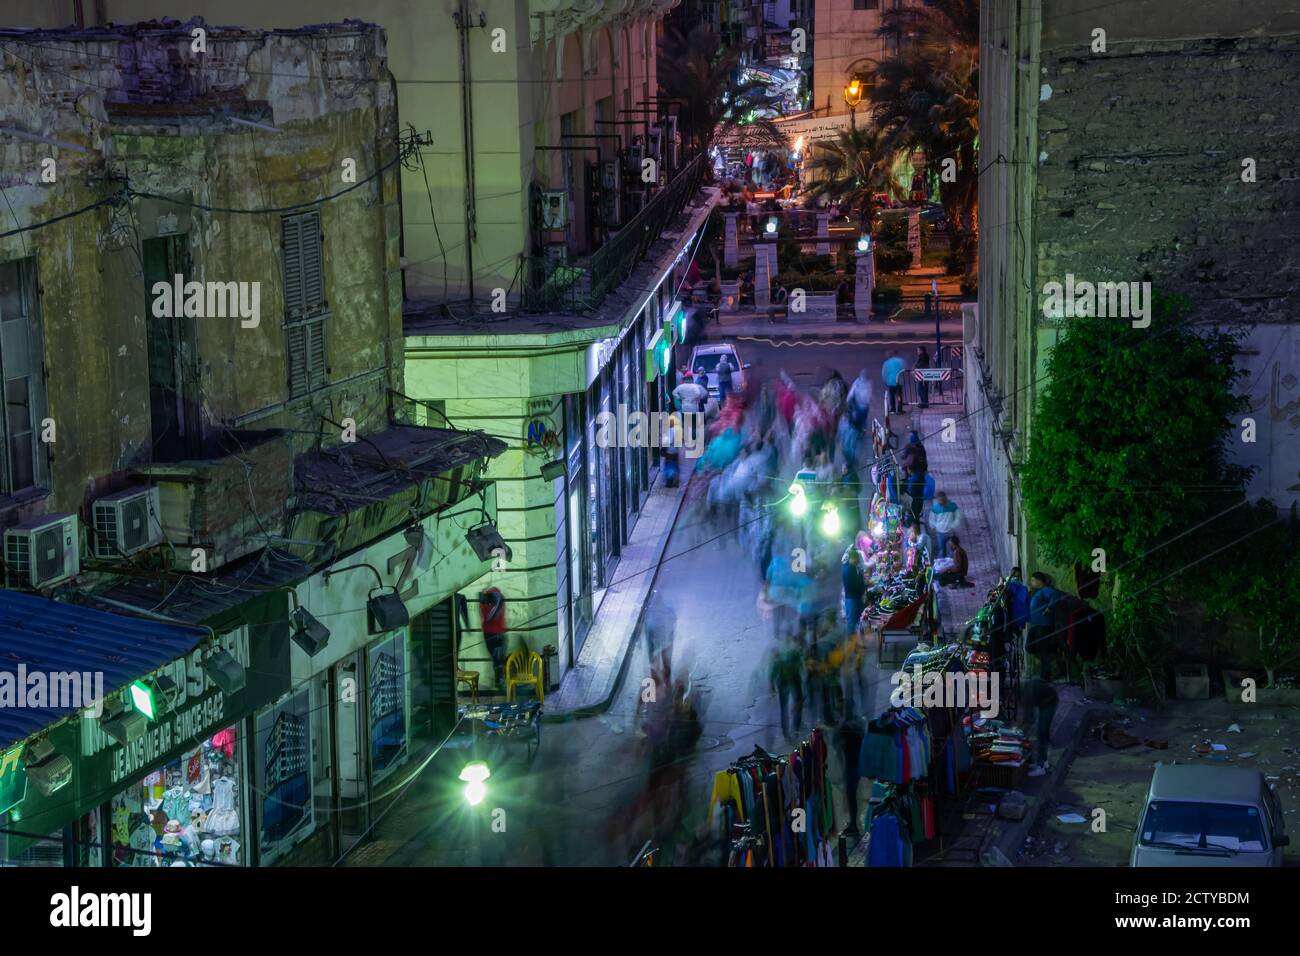 Arquitectura y escena nocturna de la calle de Egipto, Alejandría 2018 Foto de stock